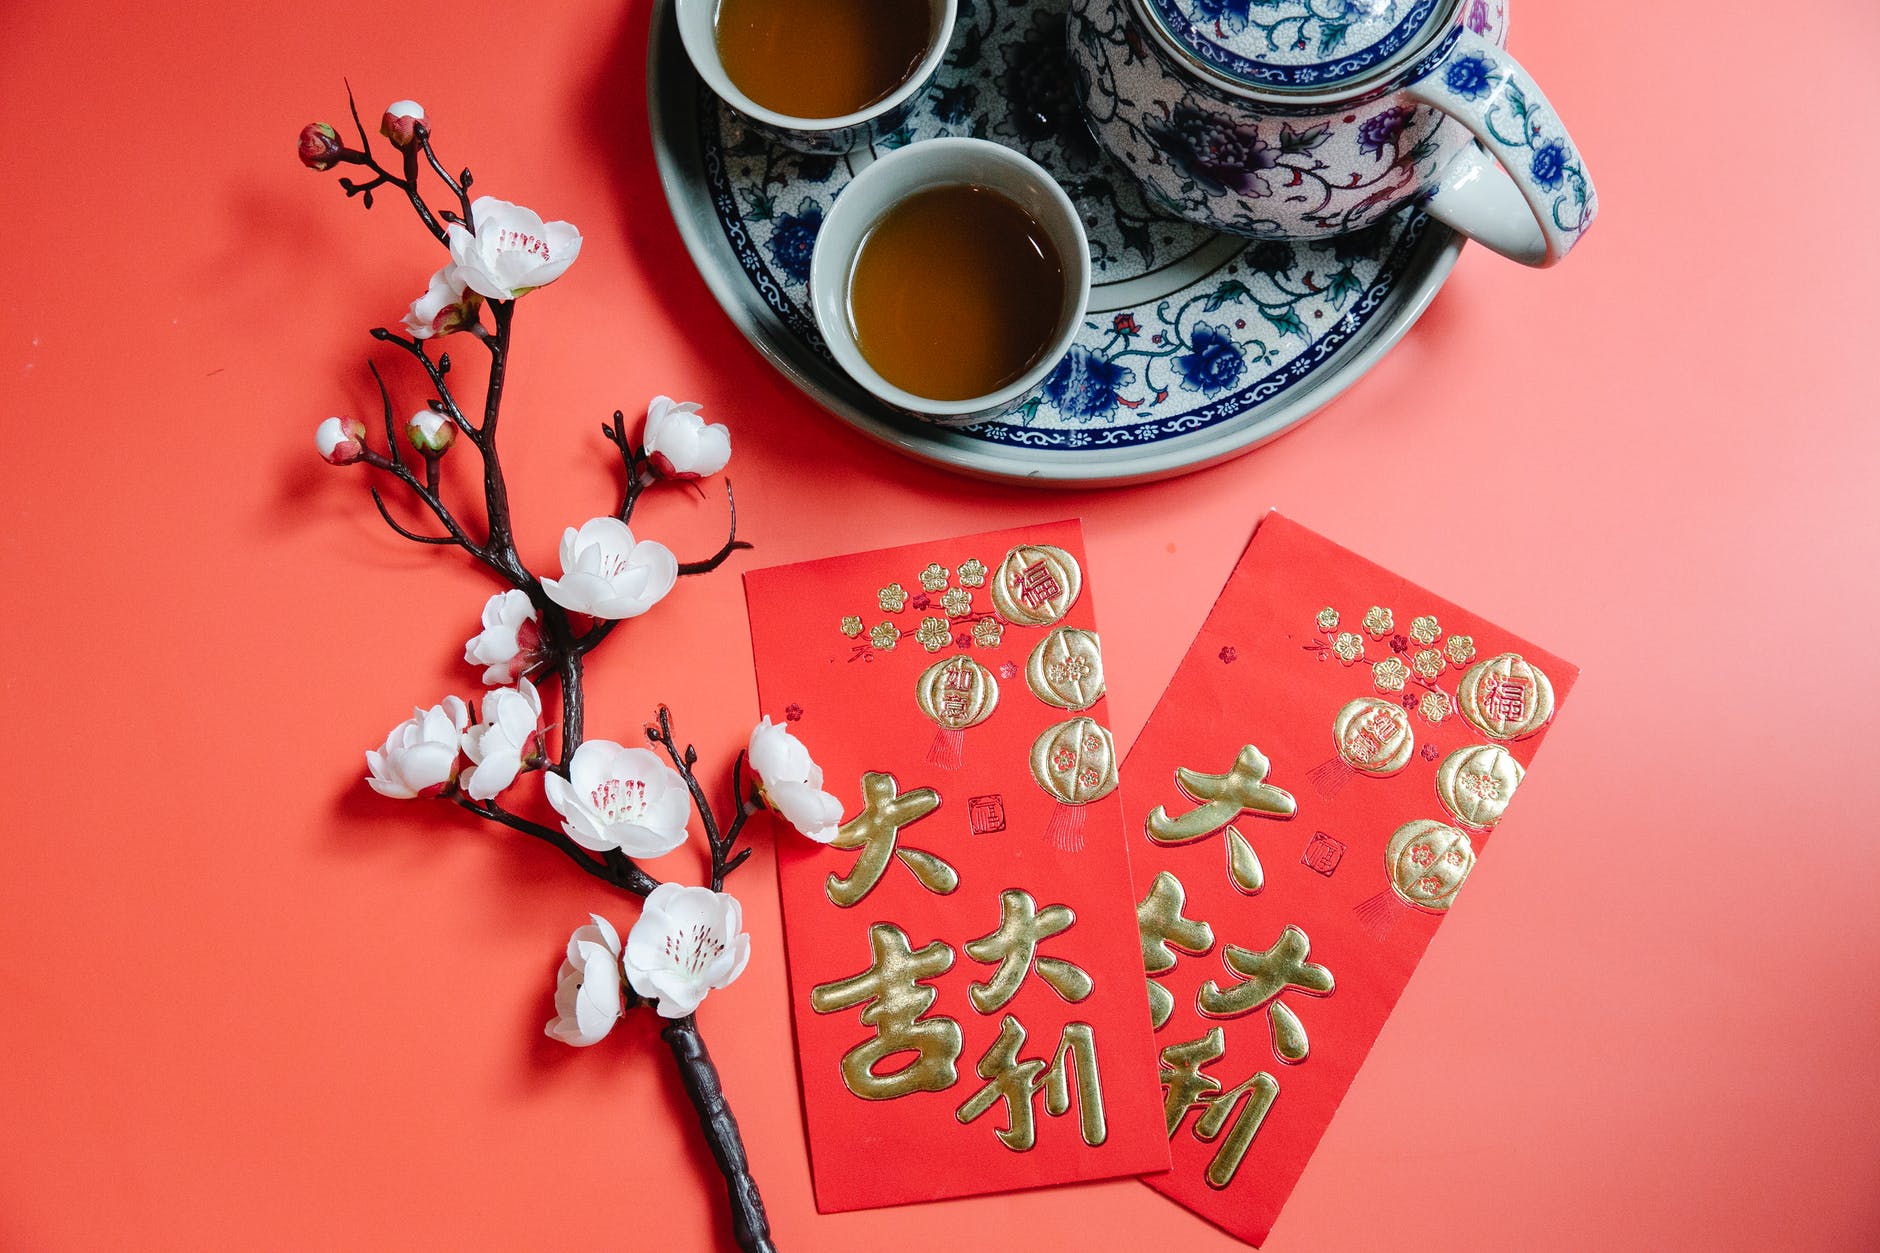 red envelopes against sprig of blooming prunus and tea